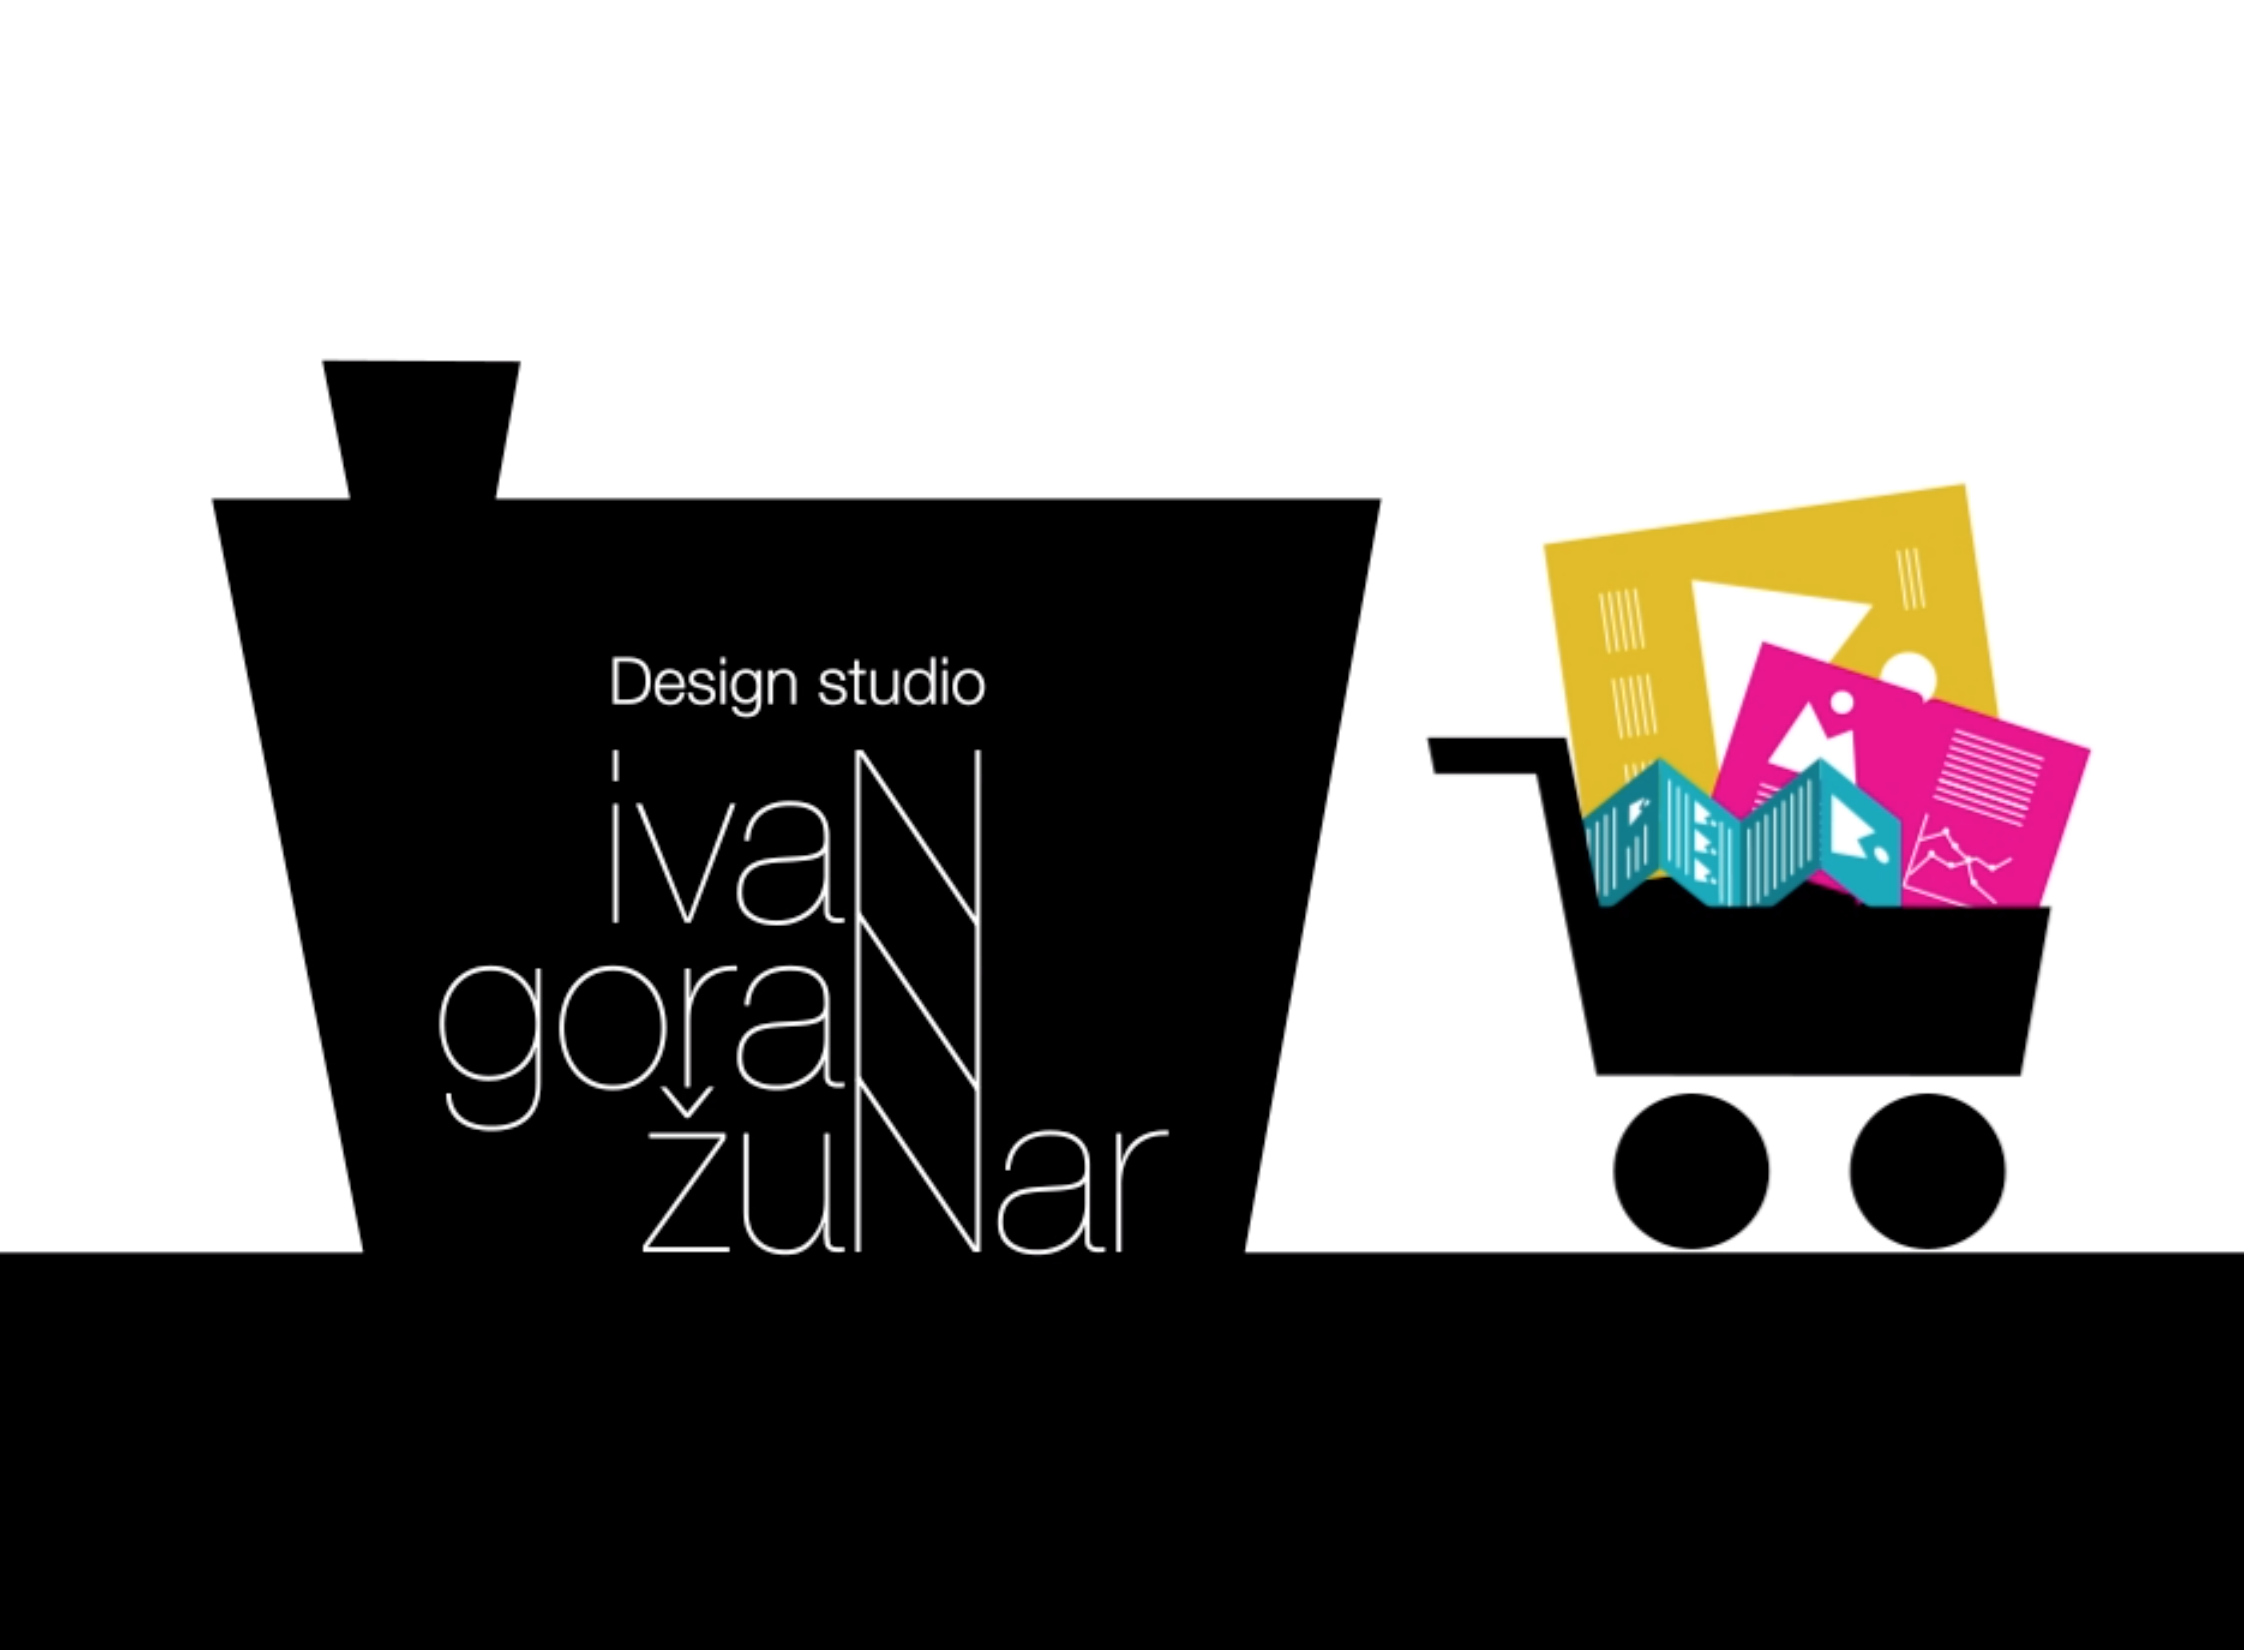 Design Studio Ivan Goran Zunar